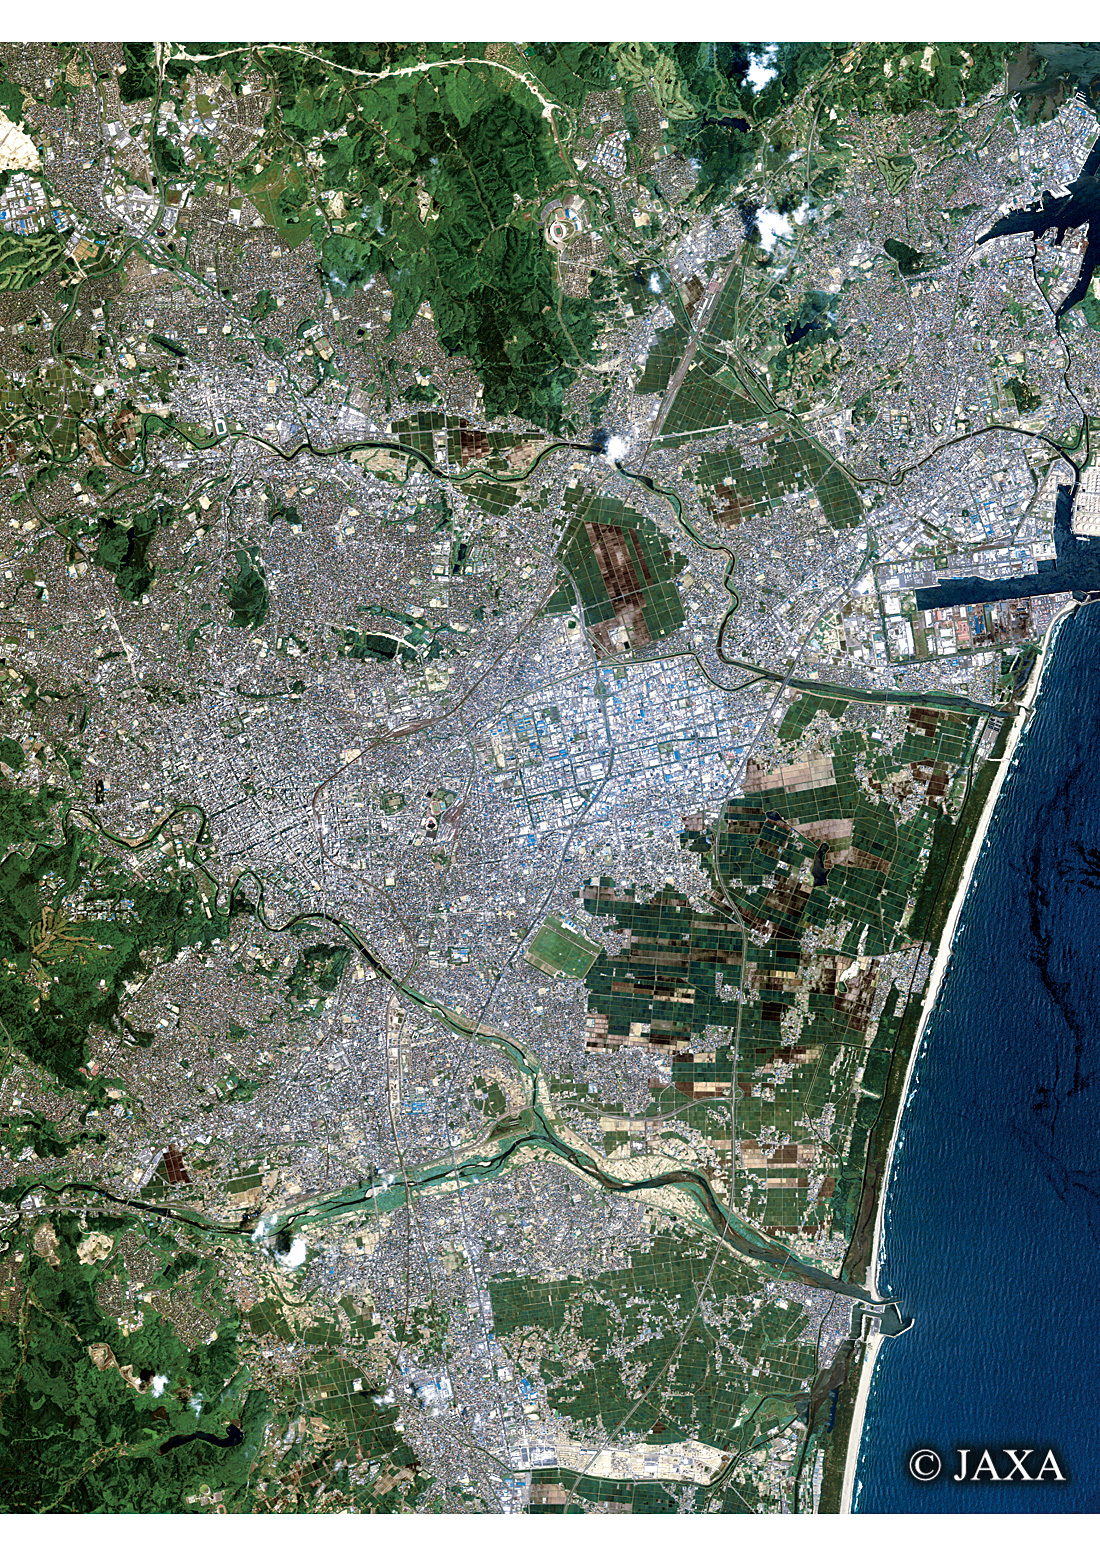 だいちから見た日本の都市 仙台市:衛星画像